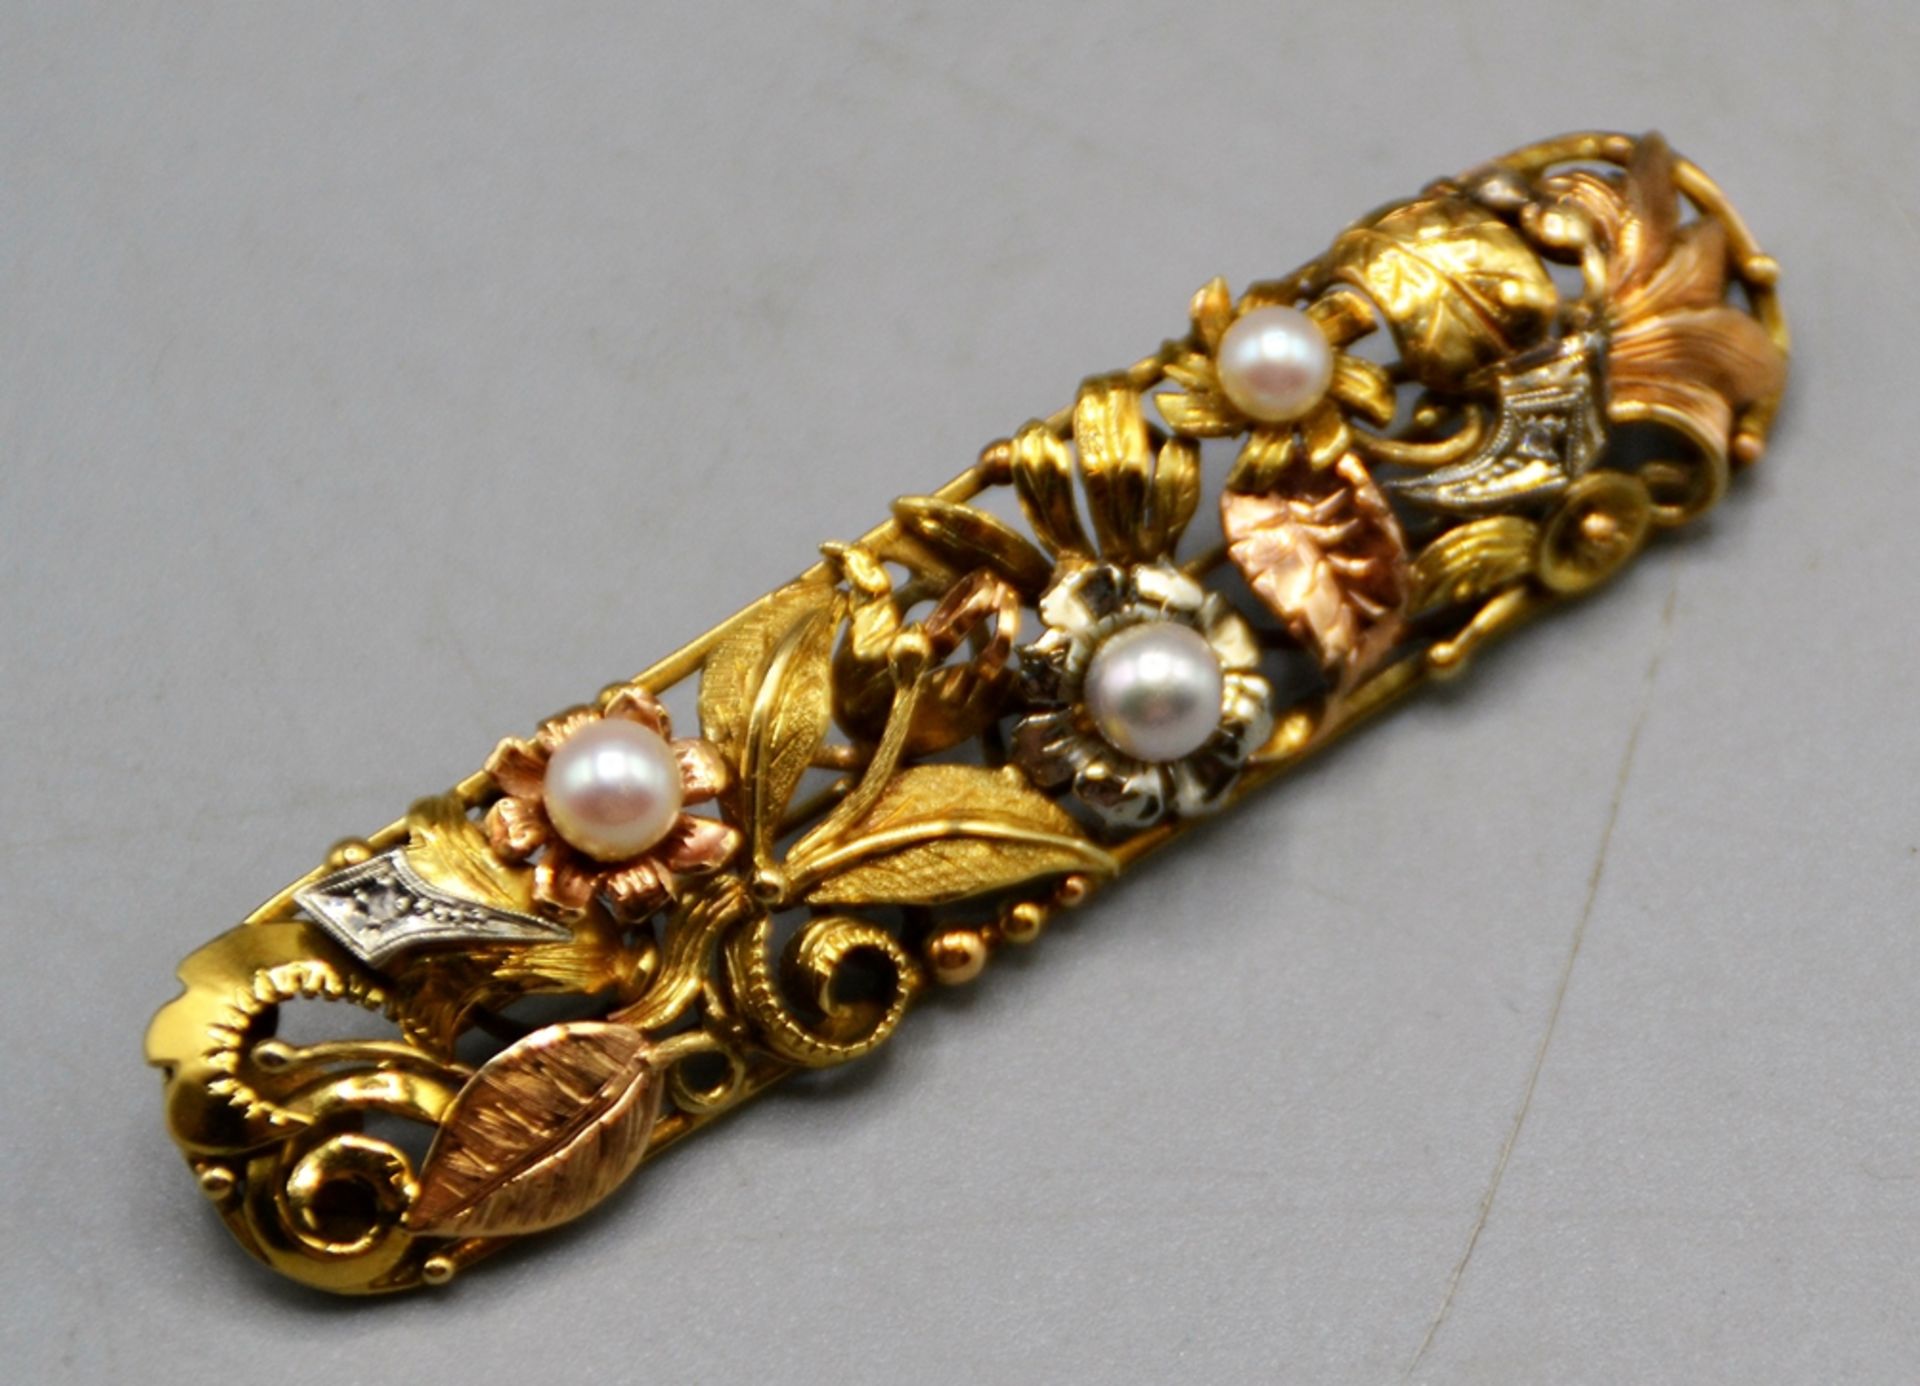 Goldbrosche mit Perlen 585 Gold, massive aufwendige Goldschmiedearbeit in Gelb- Rose- u. Weißgold, 